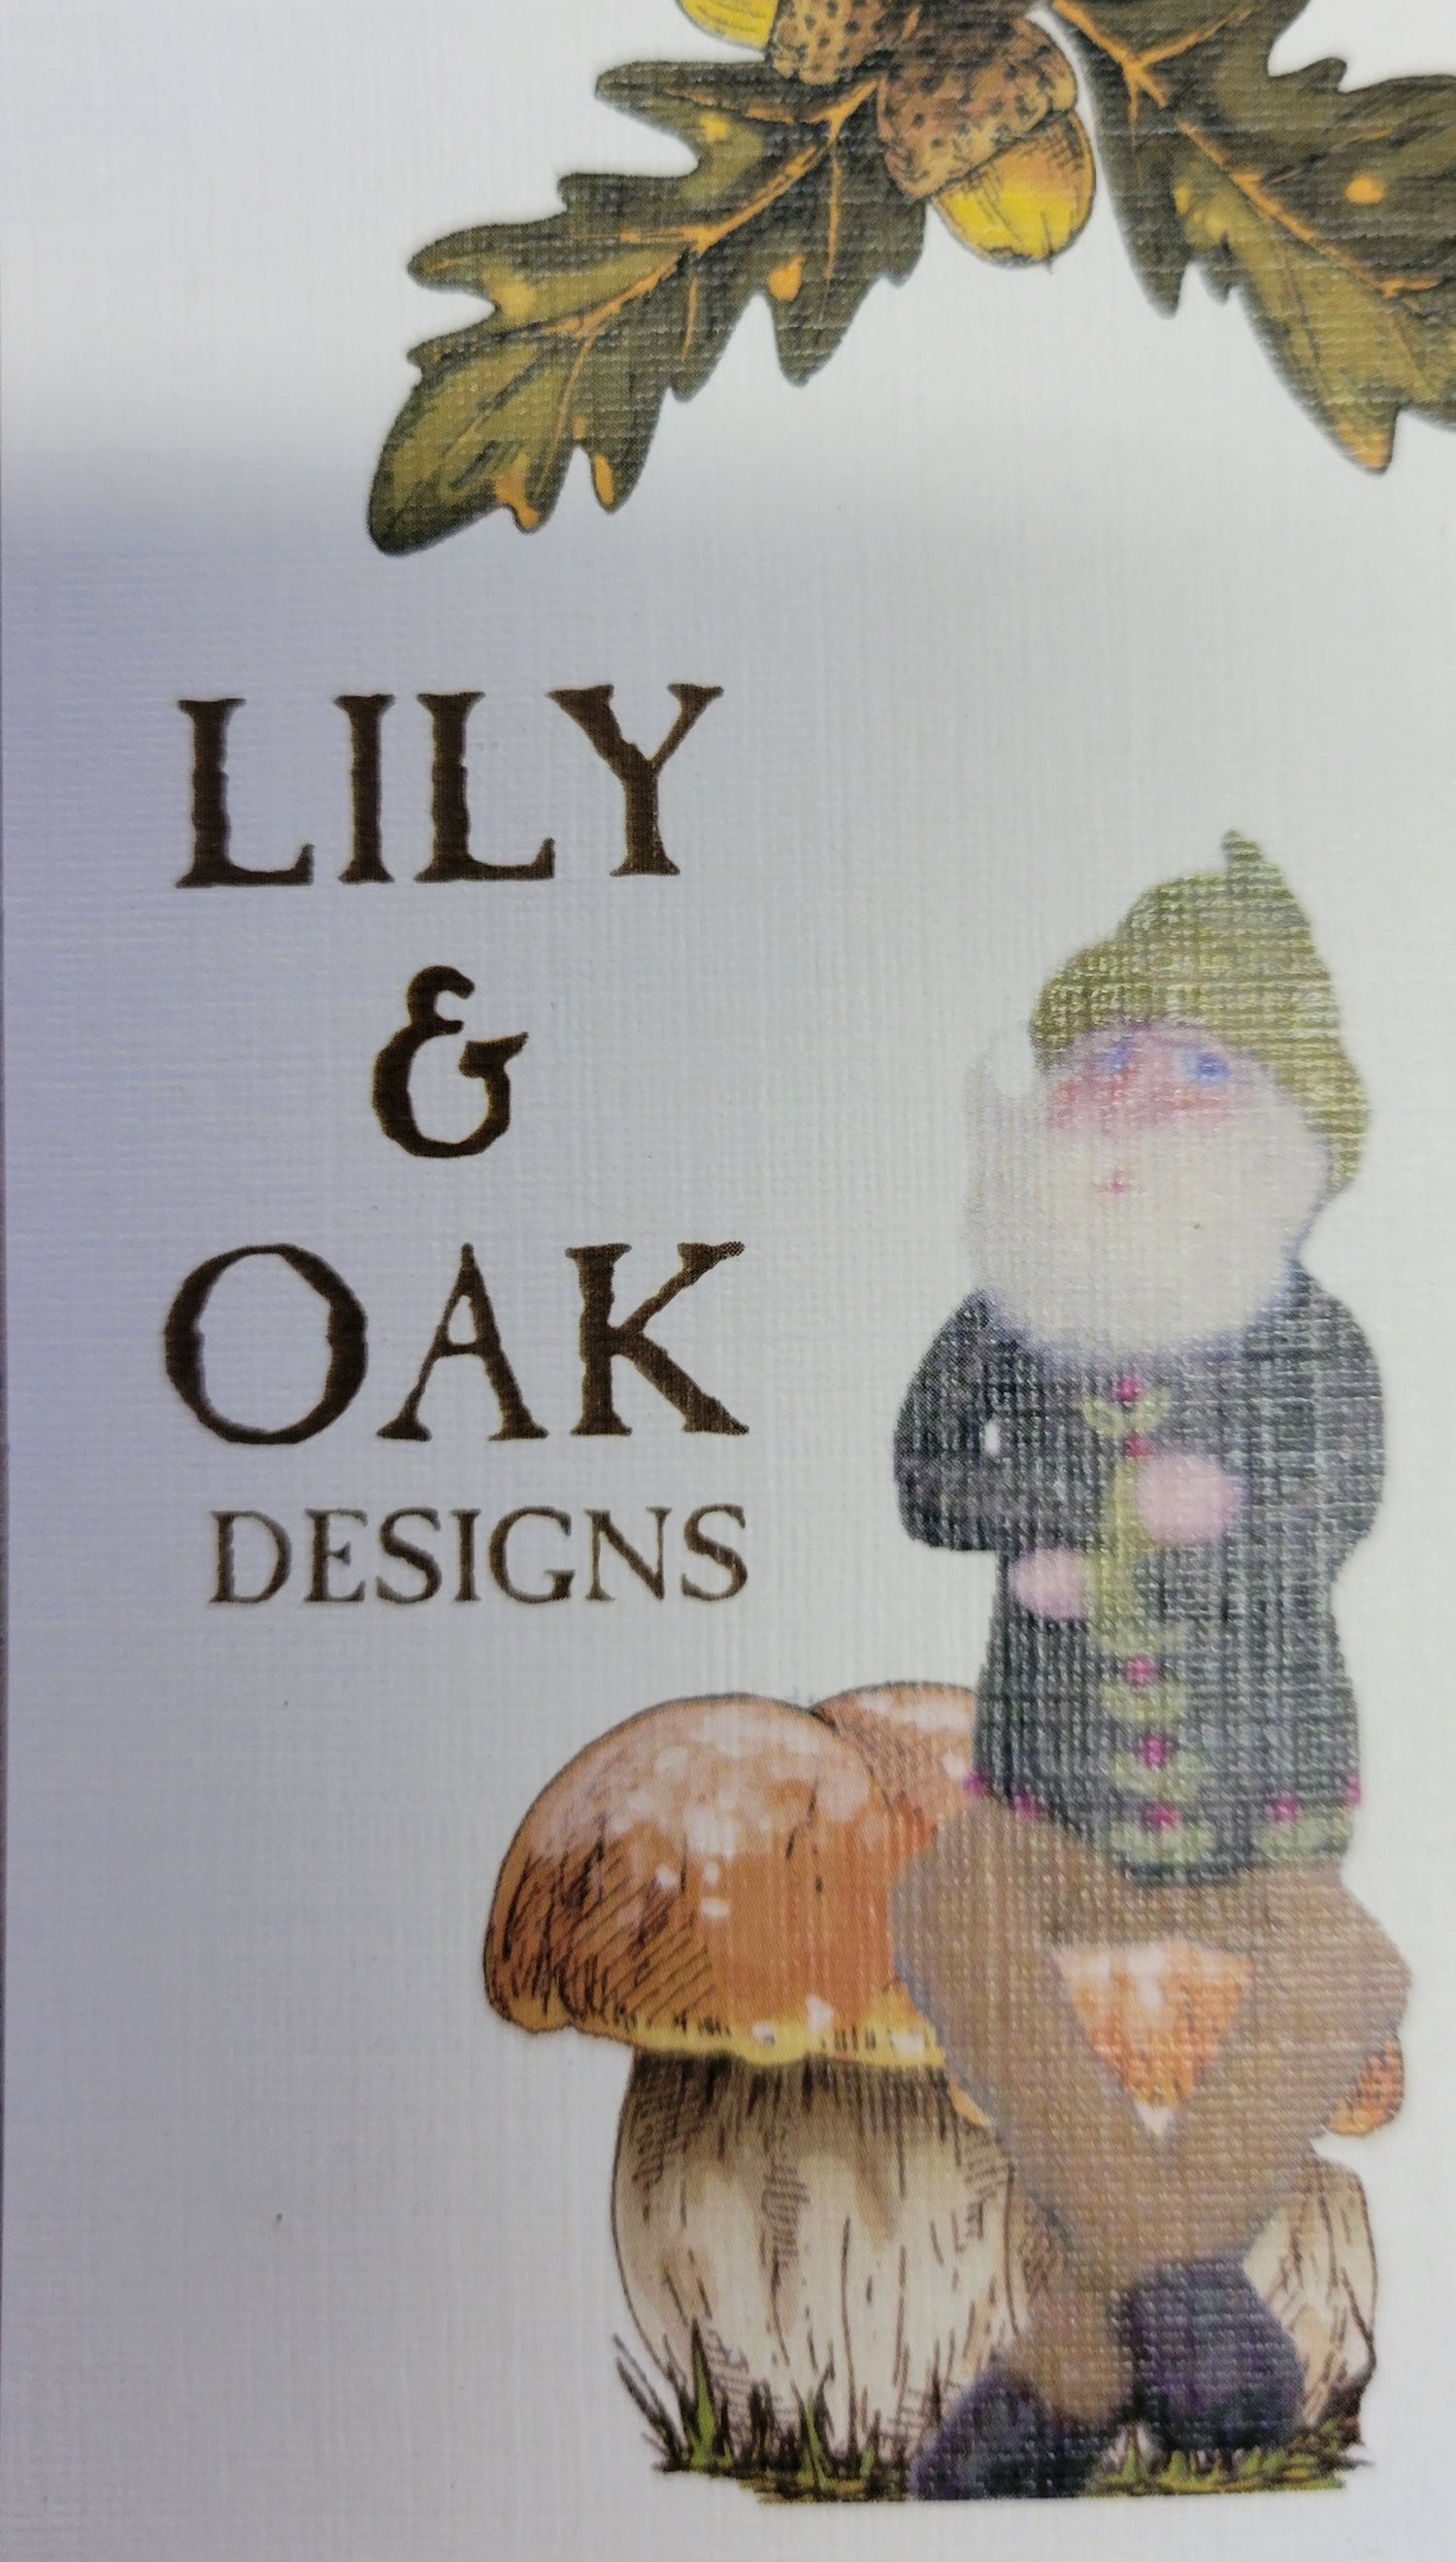 Lily & Oak Designs